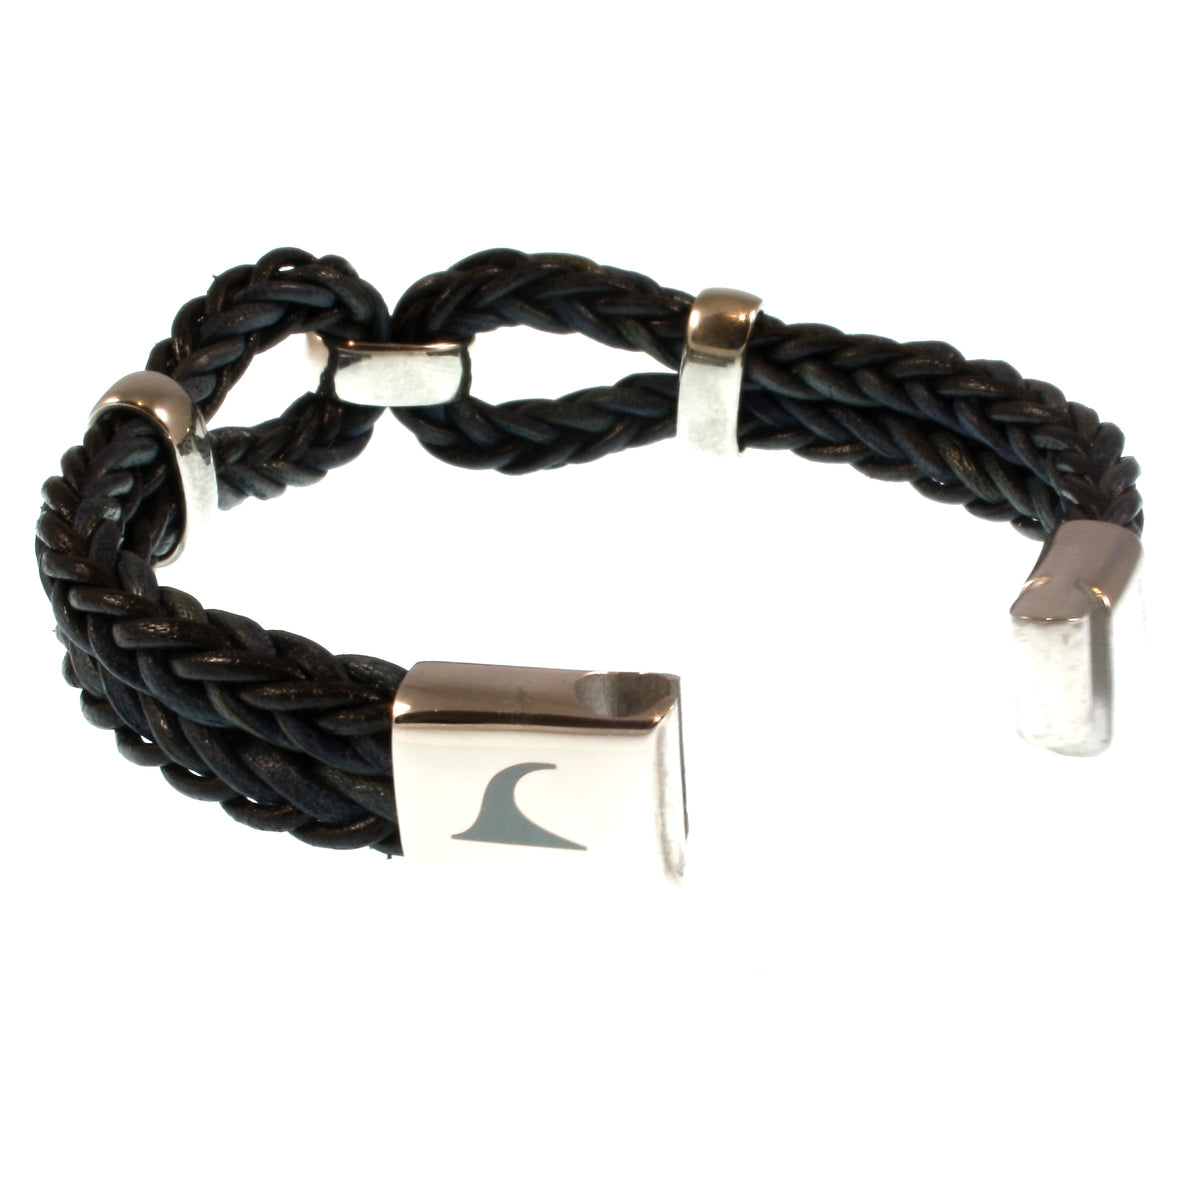 Damen-Leder-armband-roma-schwarz-geflochten-Edelstahlverschluss-offen-wavepirate-shop-r